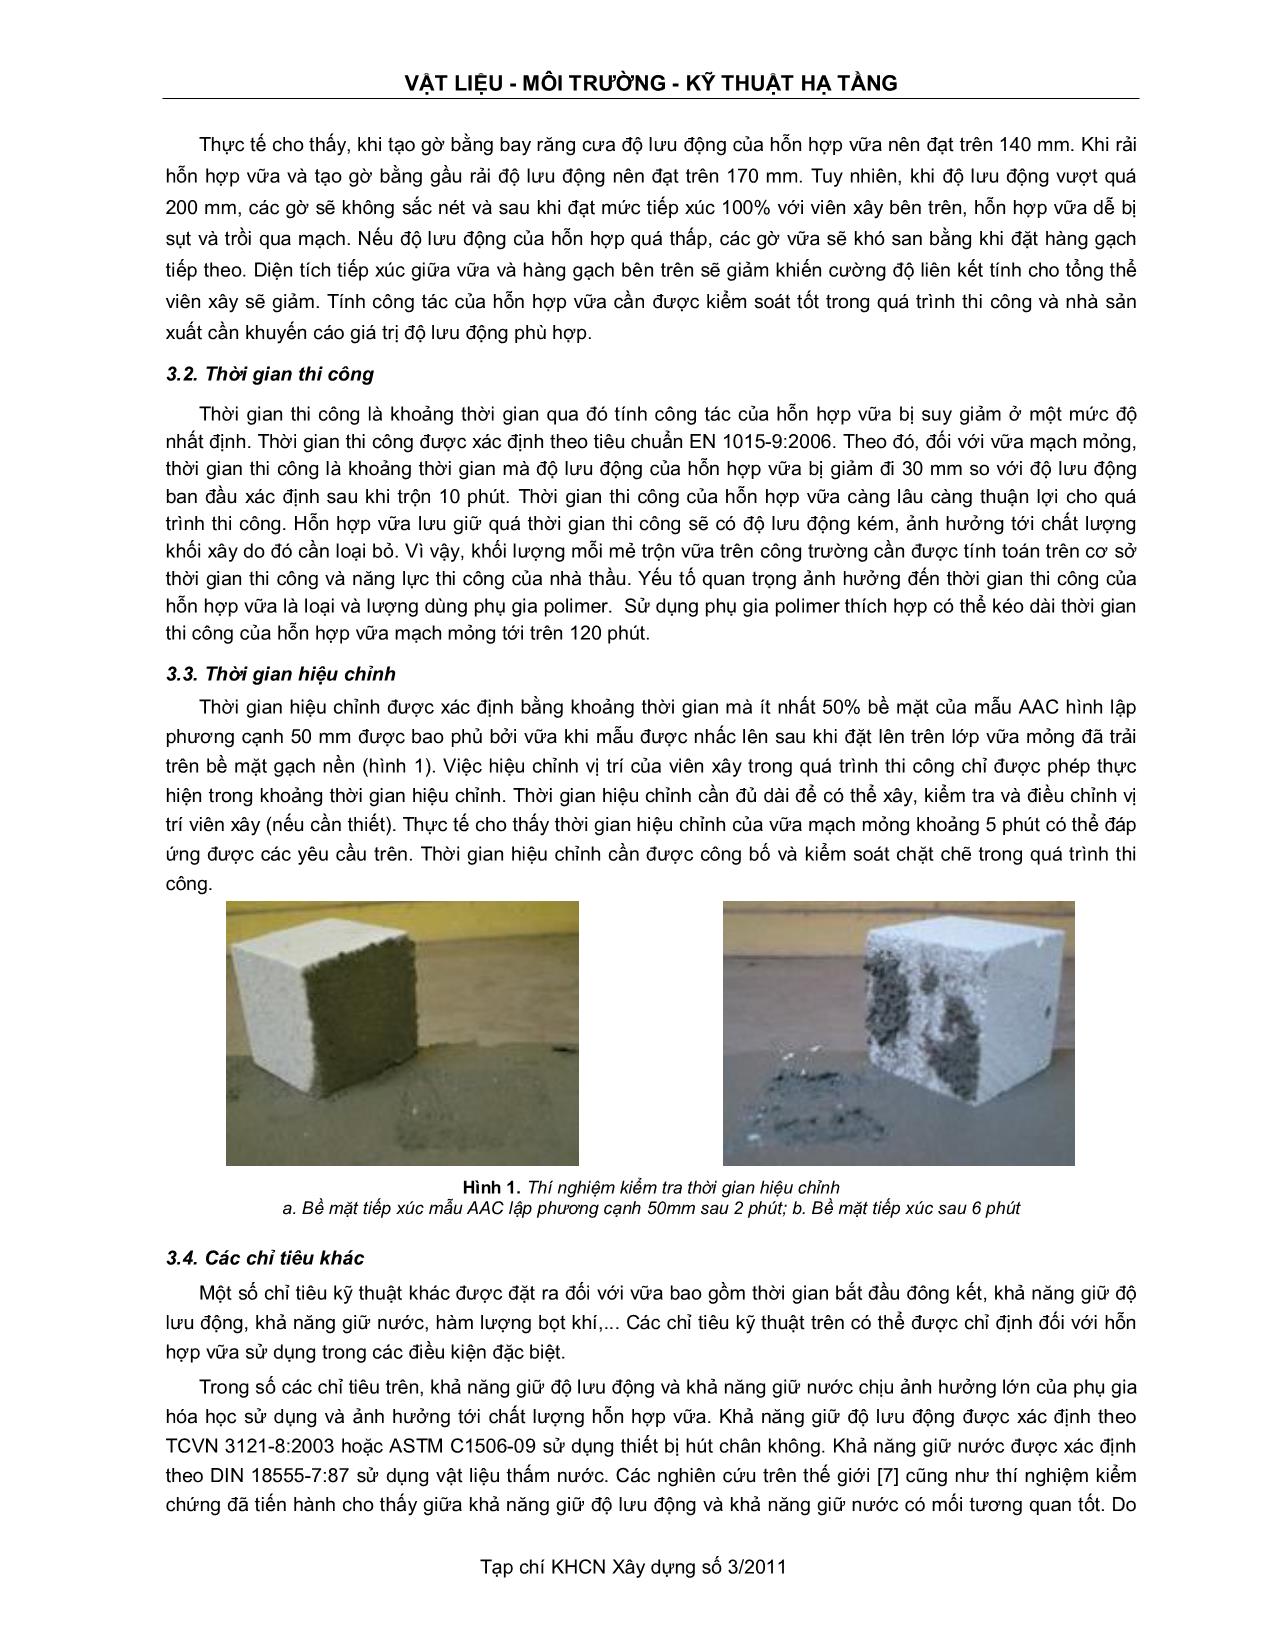 Xây dựng các chỉ tiêu kỹ thuật cho vữa mạch mỏng xây tường bê tông khí chưng áp trang 3